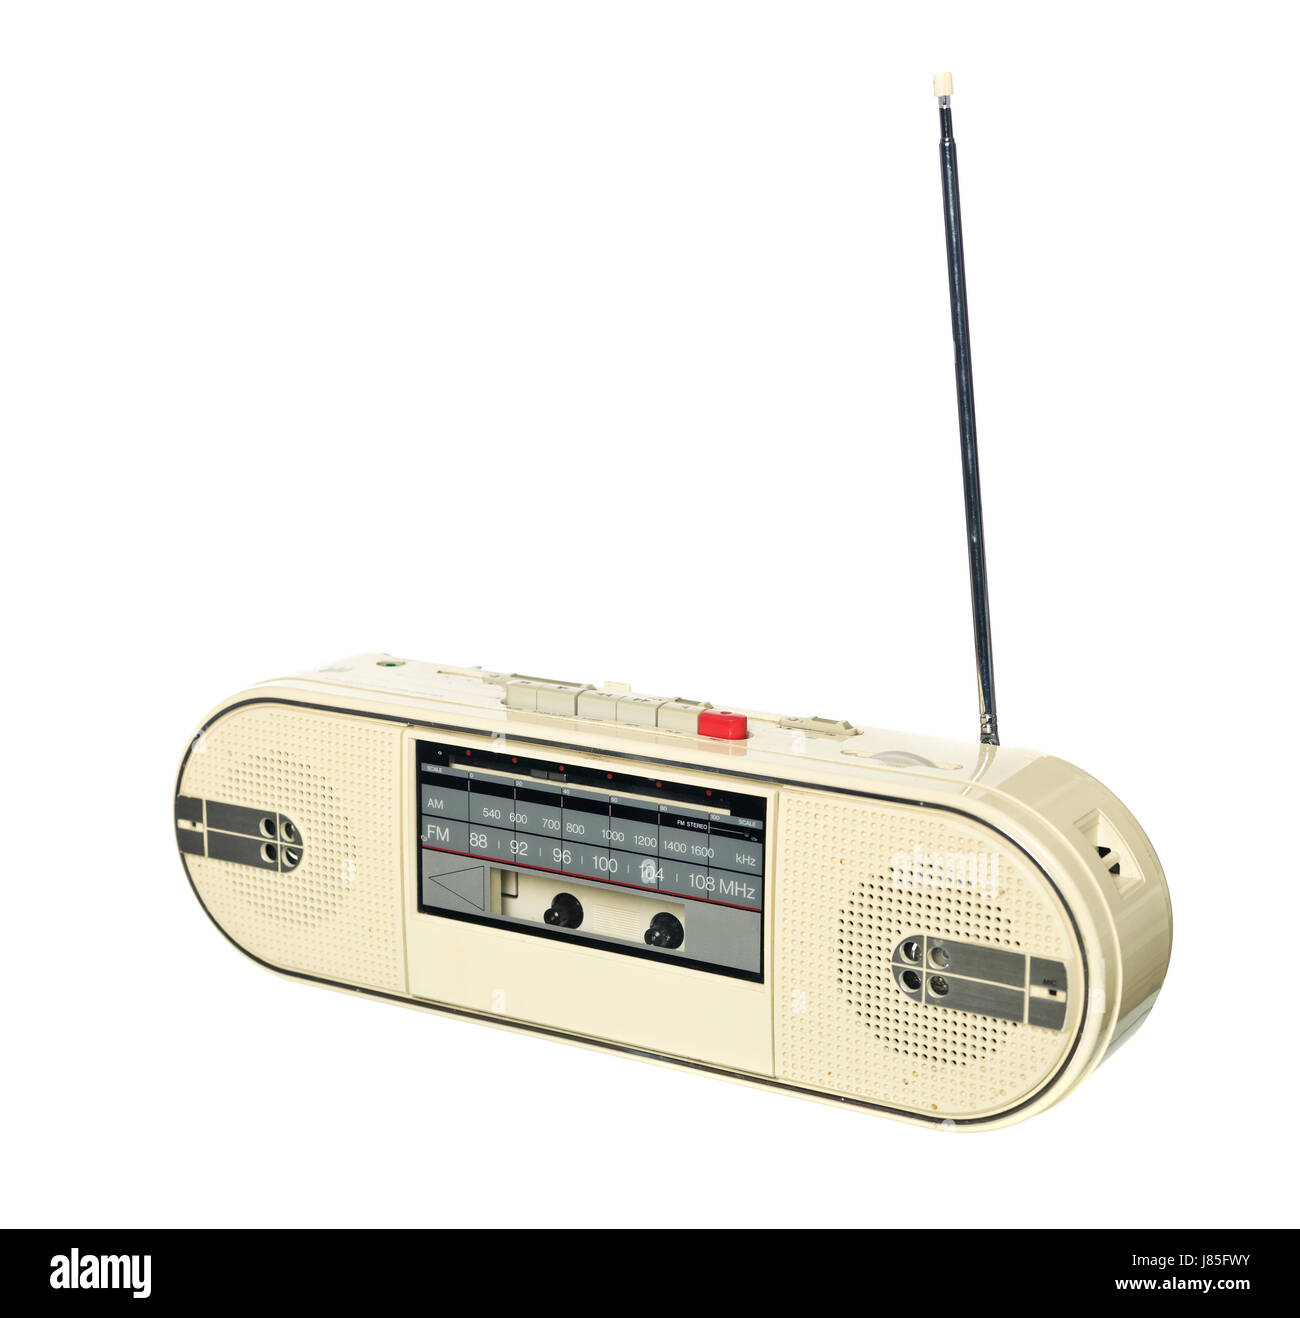 music sound isolated antenna radio speaker audio equipment white boom box 1980s Stock Photo